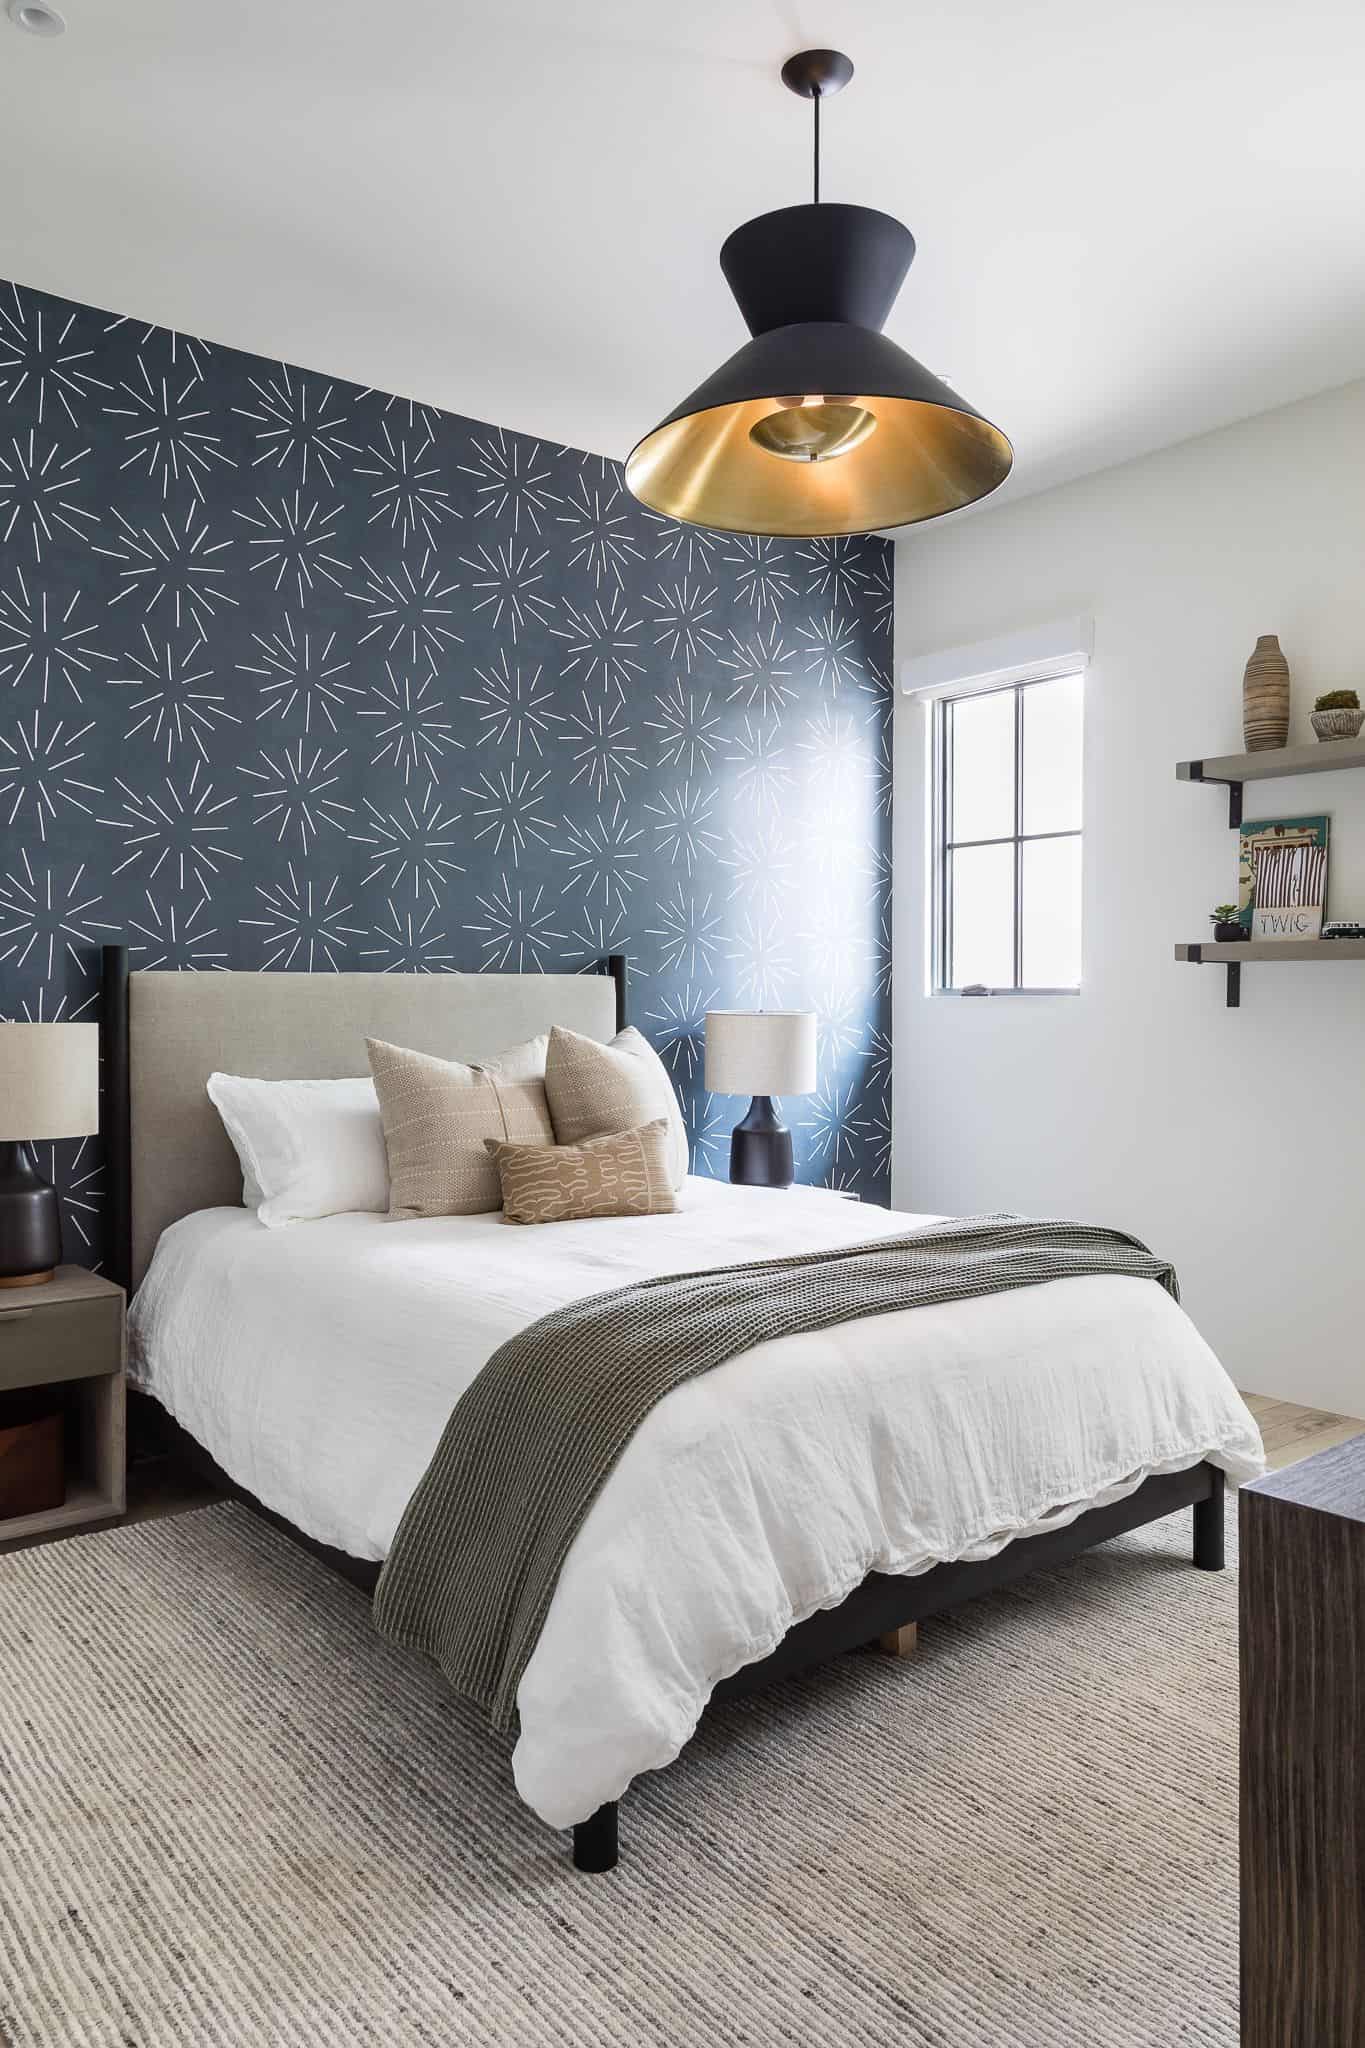 La Jolla Boys Bedroom Designs: The Look P.2 - Mindy Gayer Design